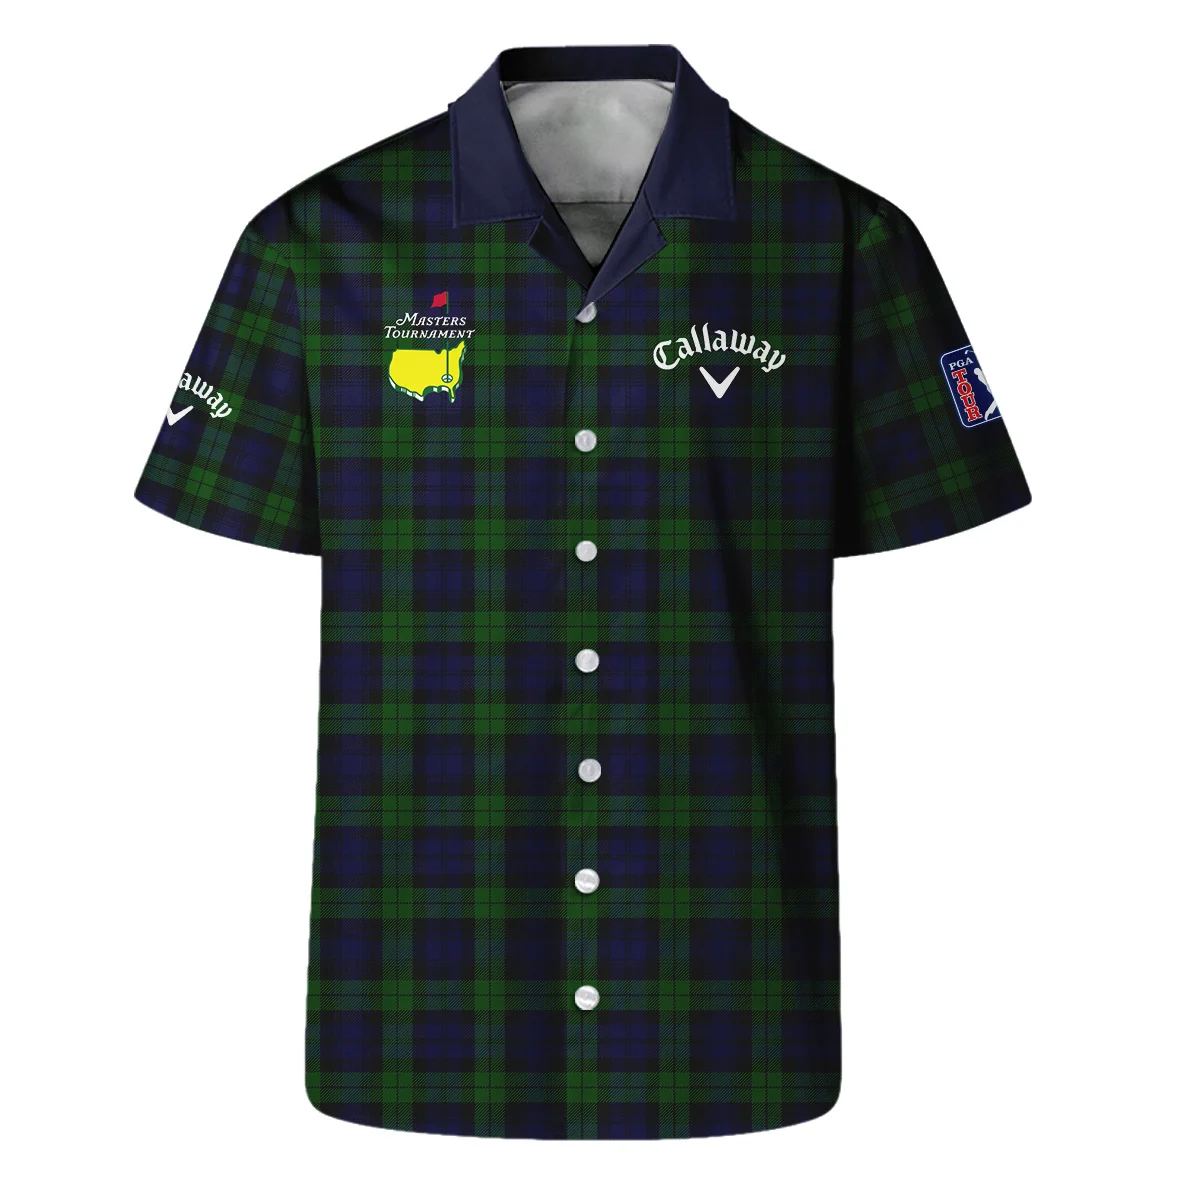 Masters Tournament Callaway Golf Zipper Hoodie Shirt Sports Green Purple Black Watch Tartan Plaid All Over Print Zipper Hoodie Shirt